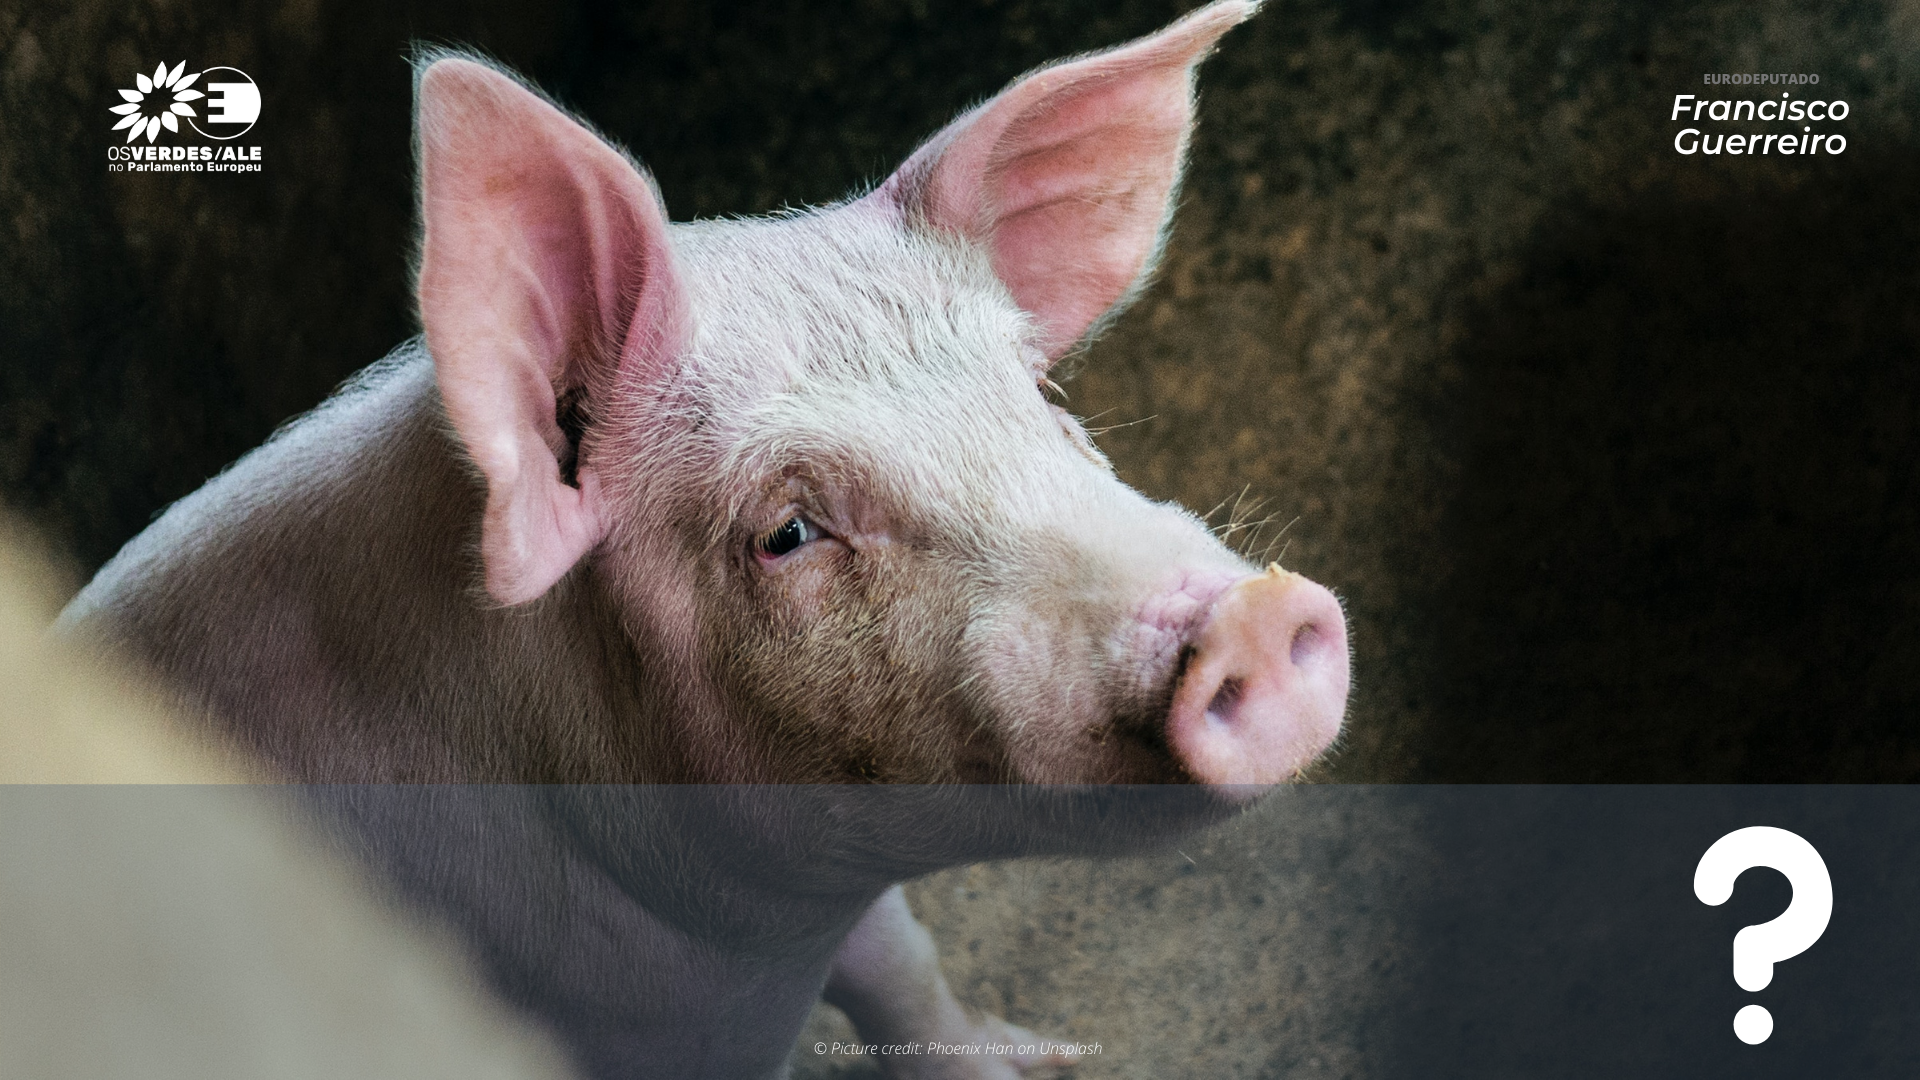 Pergunta à CE: Corte da cauda de suínos – Resposta da Comissão aos problemas de aplicação